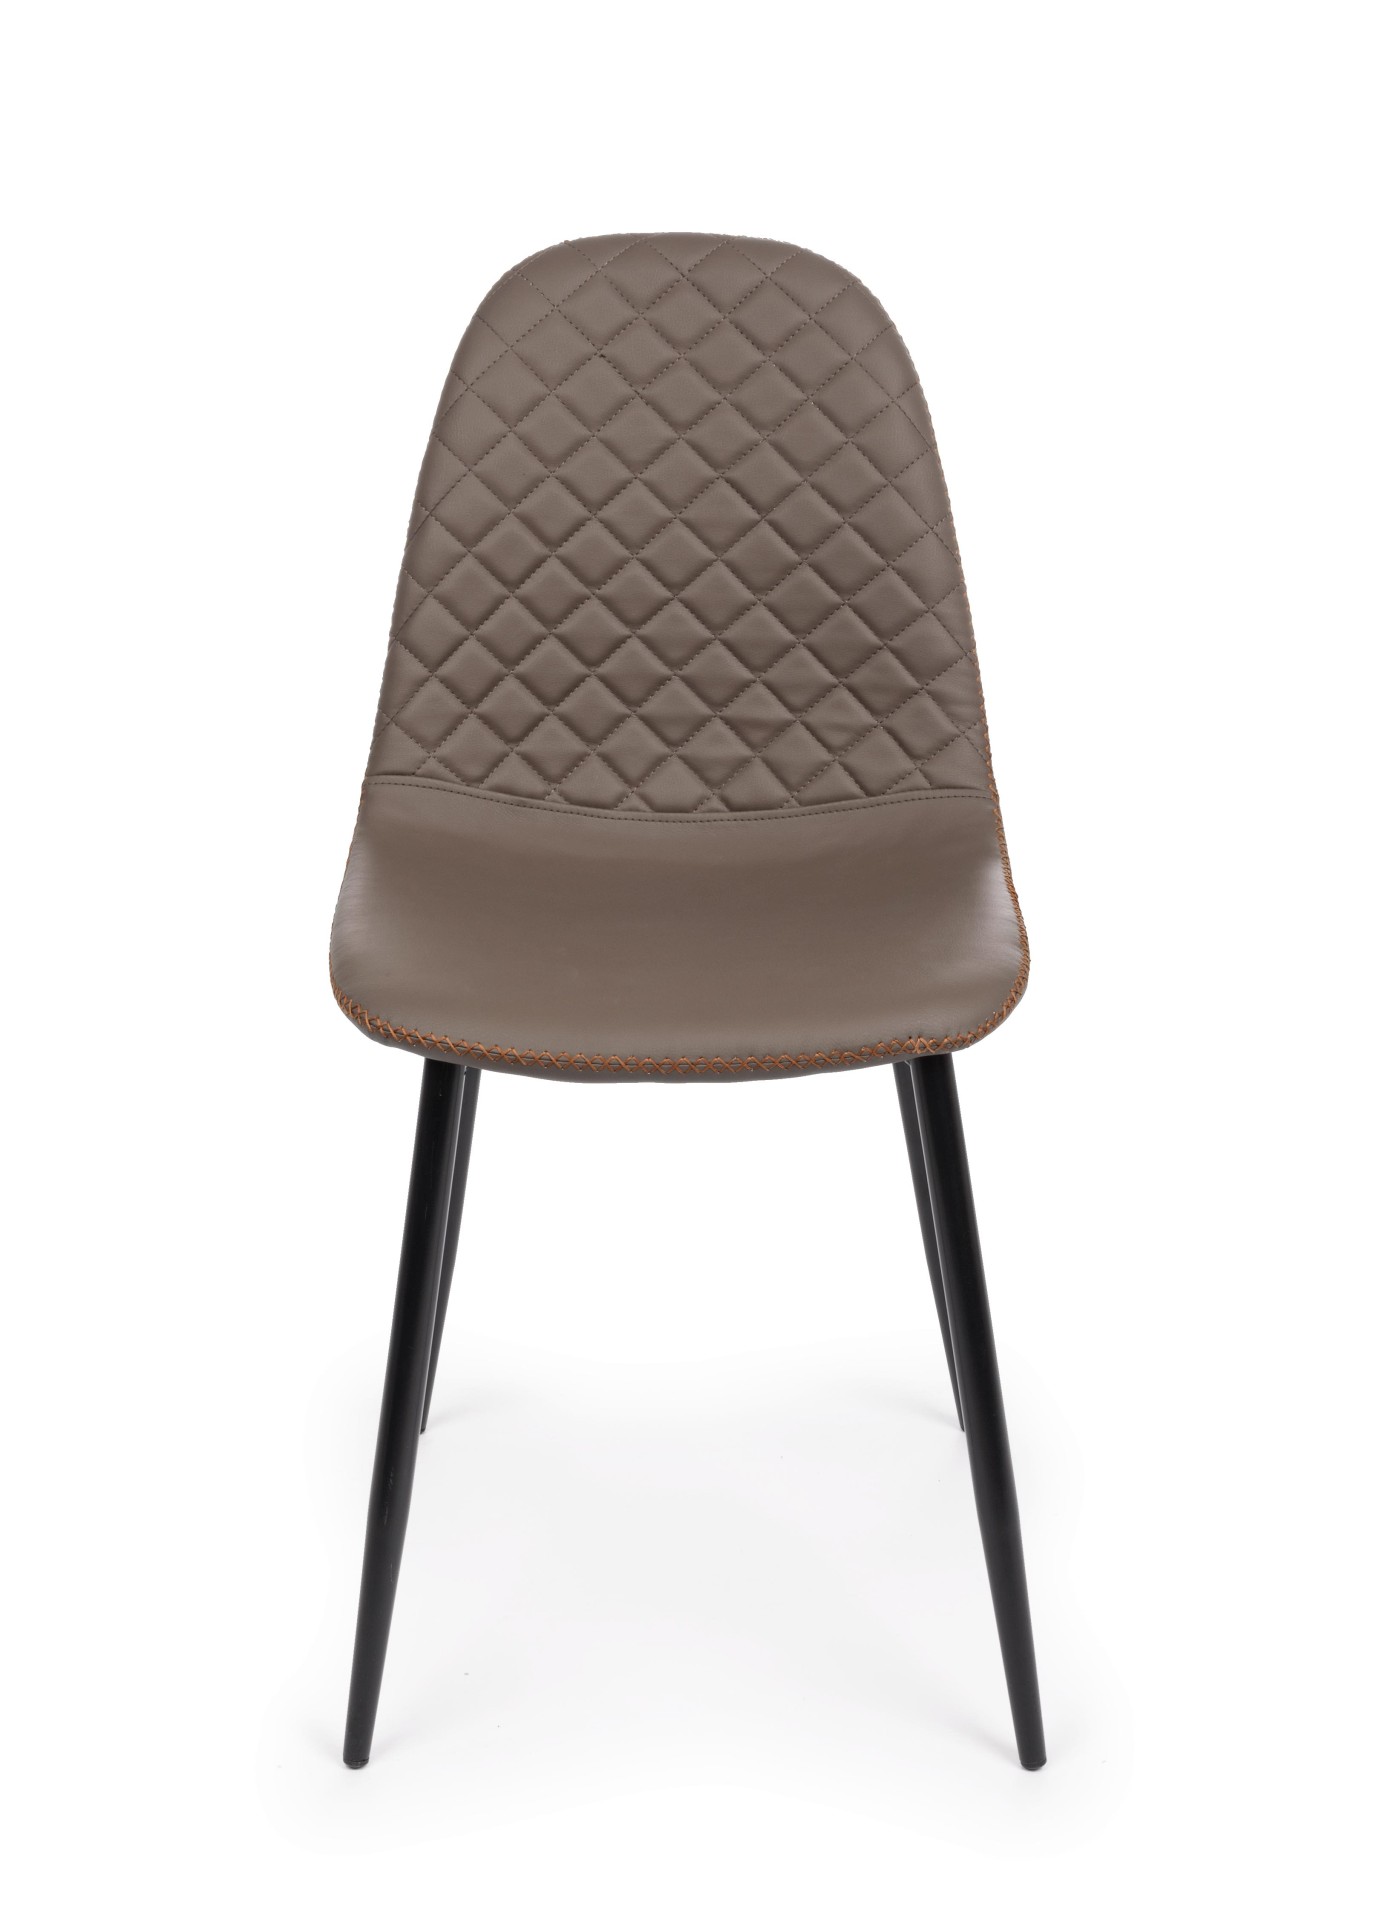 Der Esszimmerstuhl Amanda überzeugt mit seinem modernem Design. Gefertigt wurde der Stuhl aus Kunstleder, welches einen braunen Farbton besitzt. Das Gestell ist aus Metall und ist Schwarz. Die Sitzhöhe beträgt 49 cm.